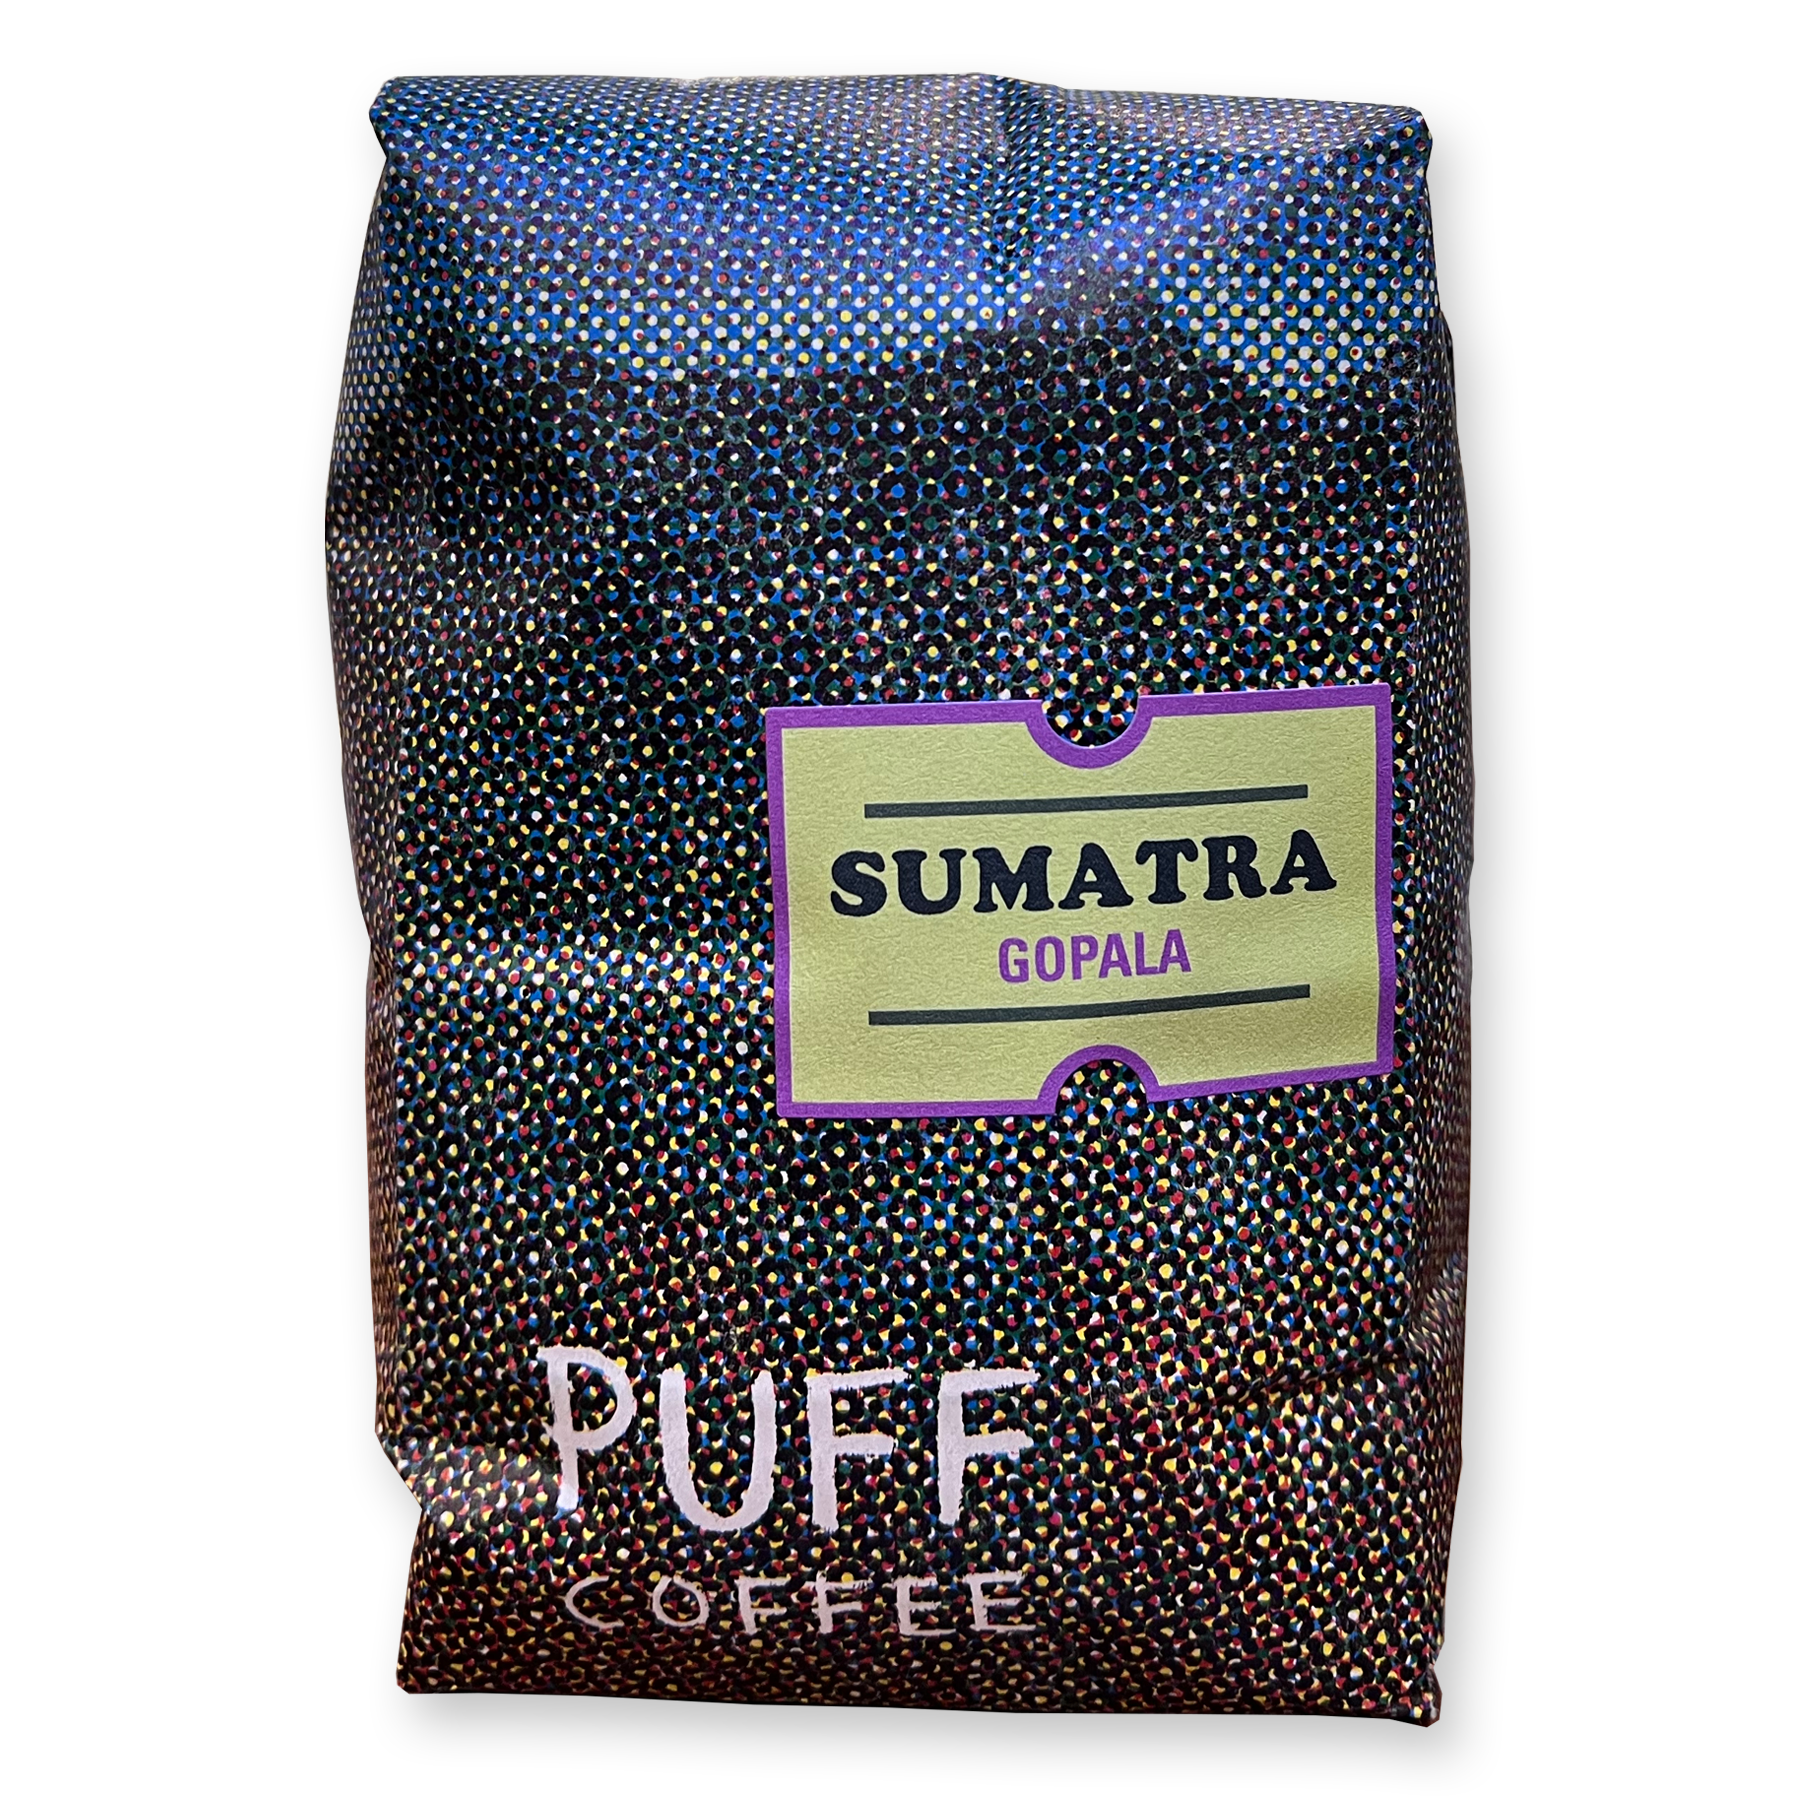 Sumatra Gopala